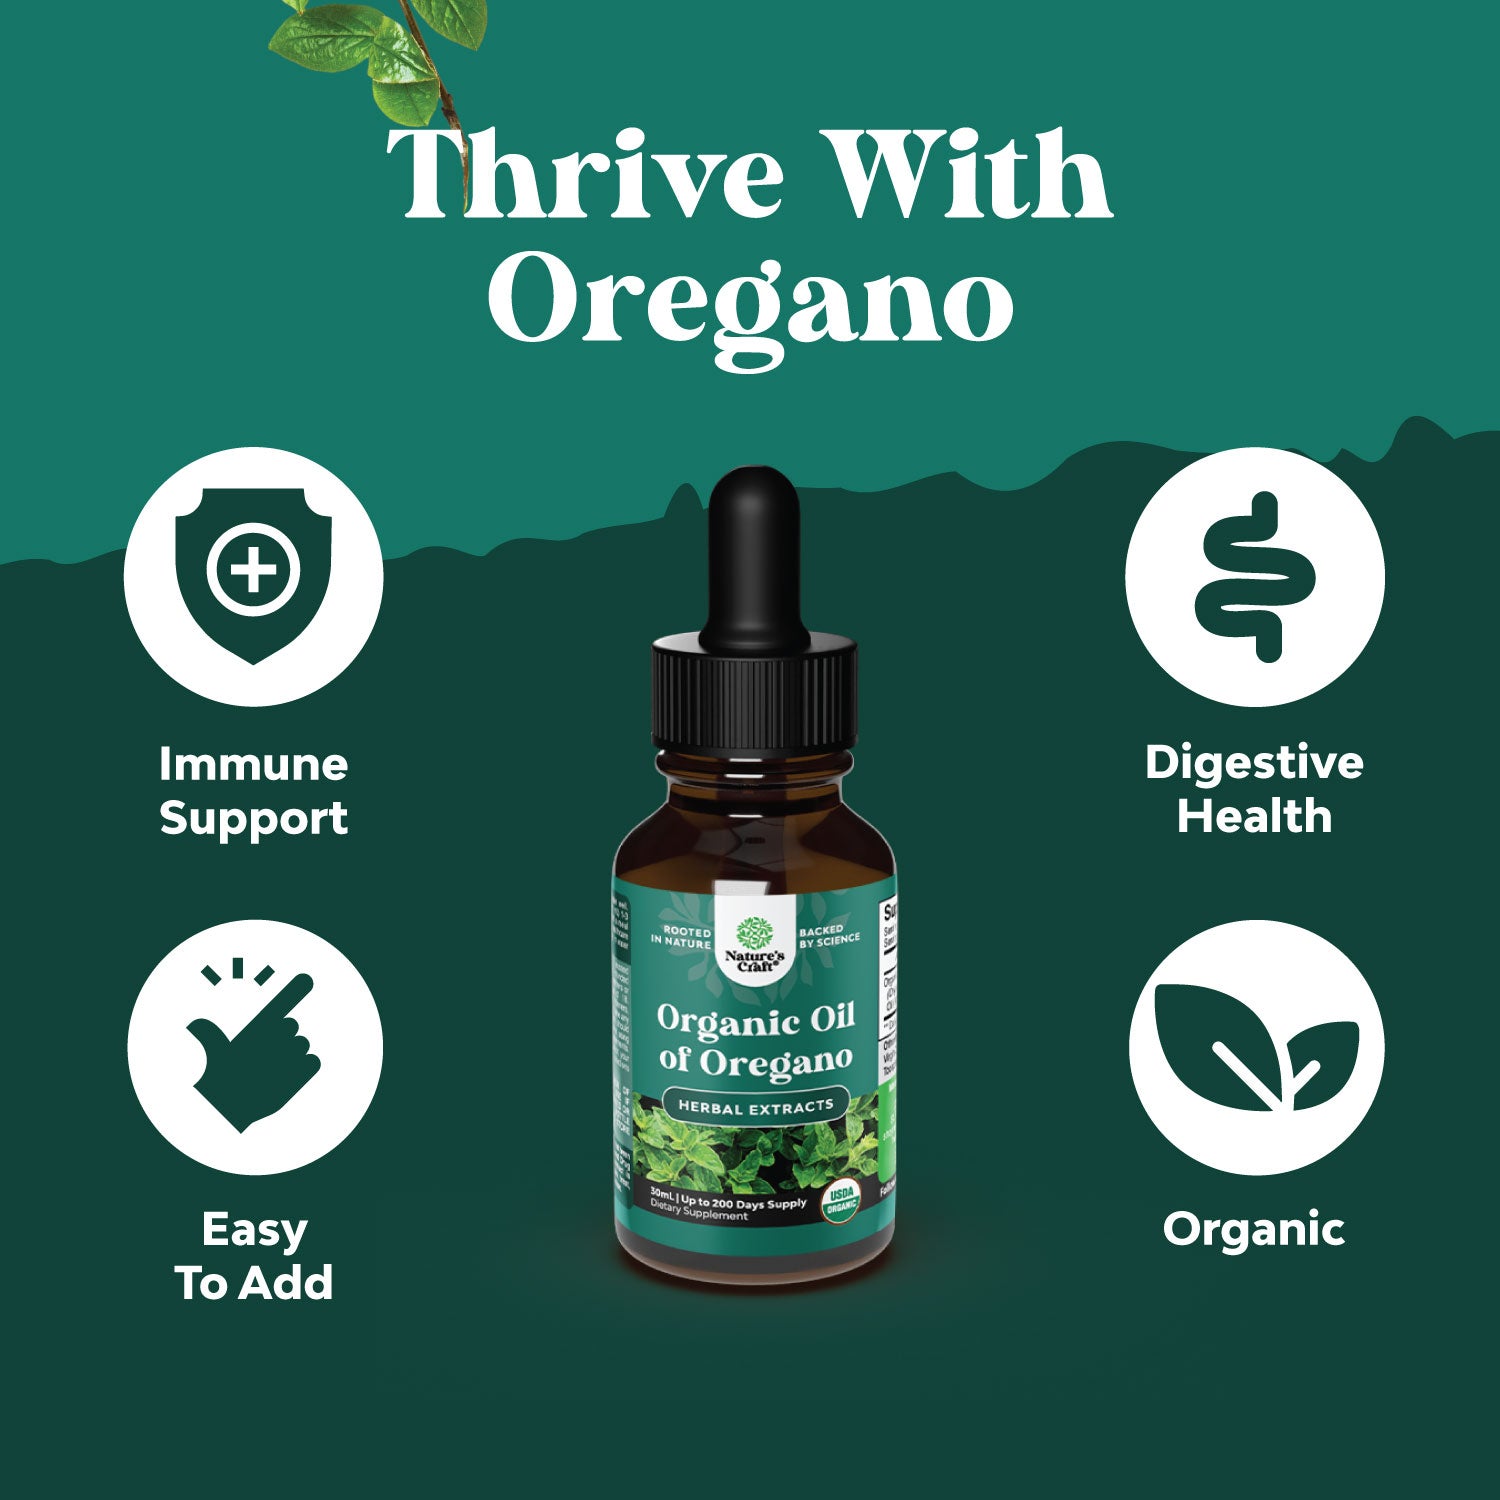 Organic Oil of Oregano Drops